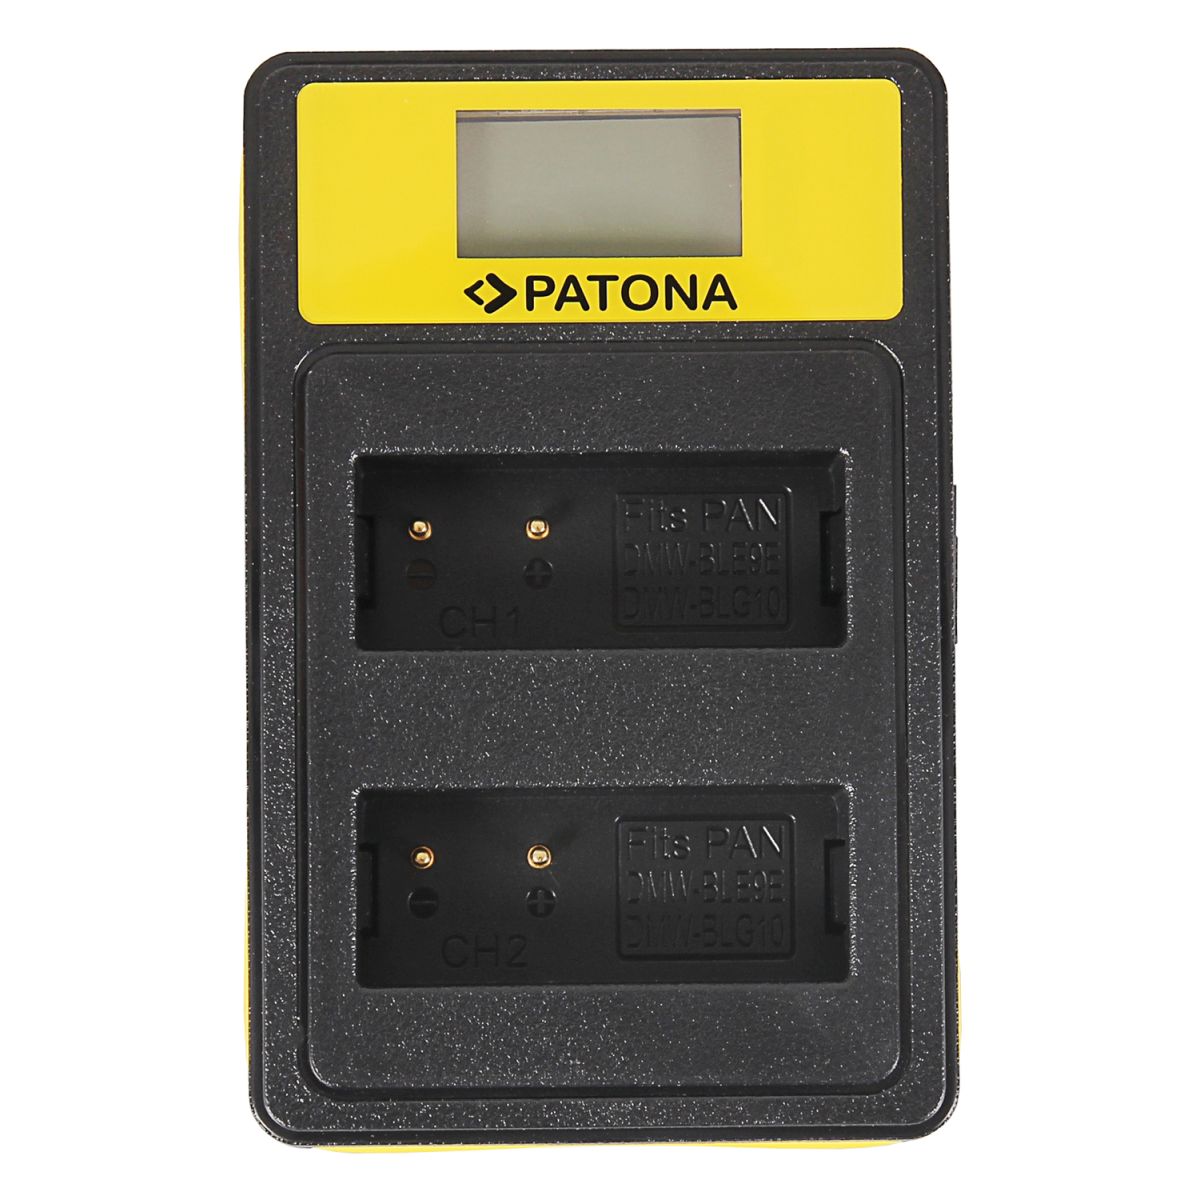 Patona Dual LCD USB Ladegerät Panasonic BLG 10